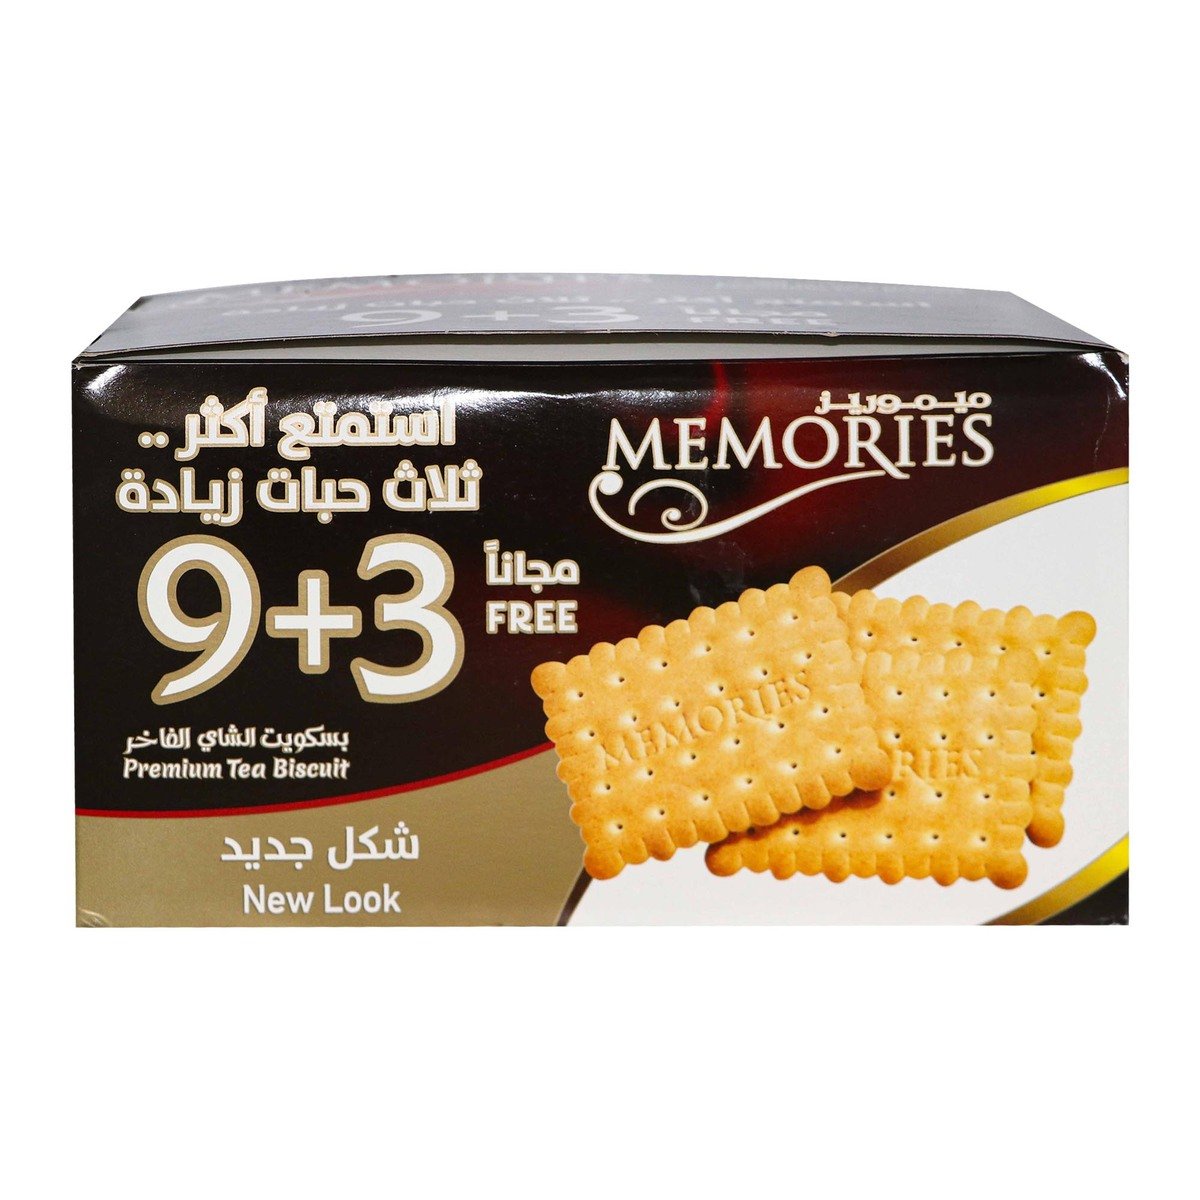 اشتري قم بشراء ميموريز بسكويت شاي 80 جم 9+3 Online at Best Price من الموقع - من لولو هايبر ماركت Plain Biscuits في السعودية